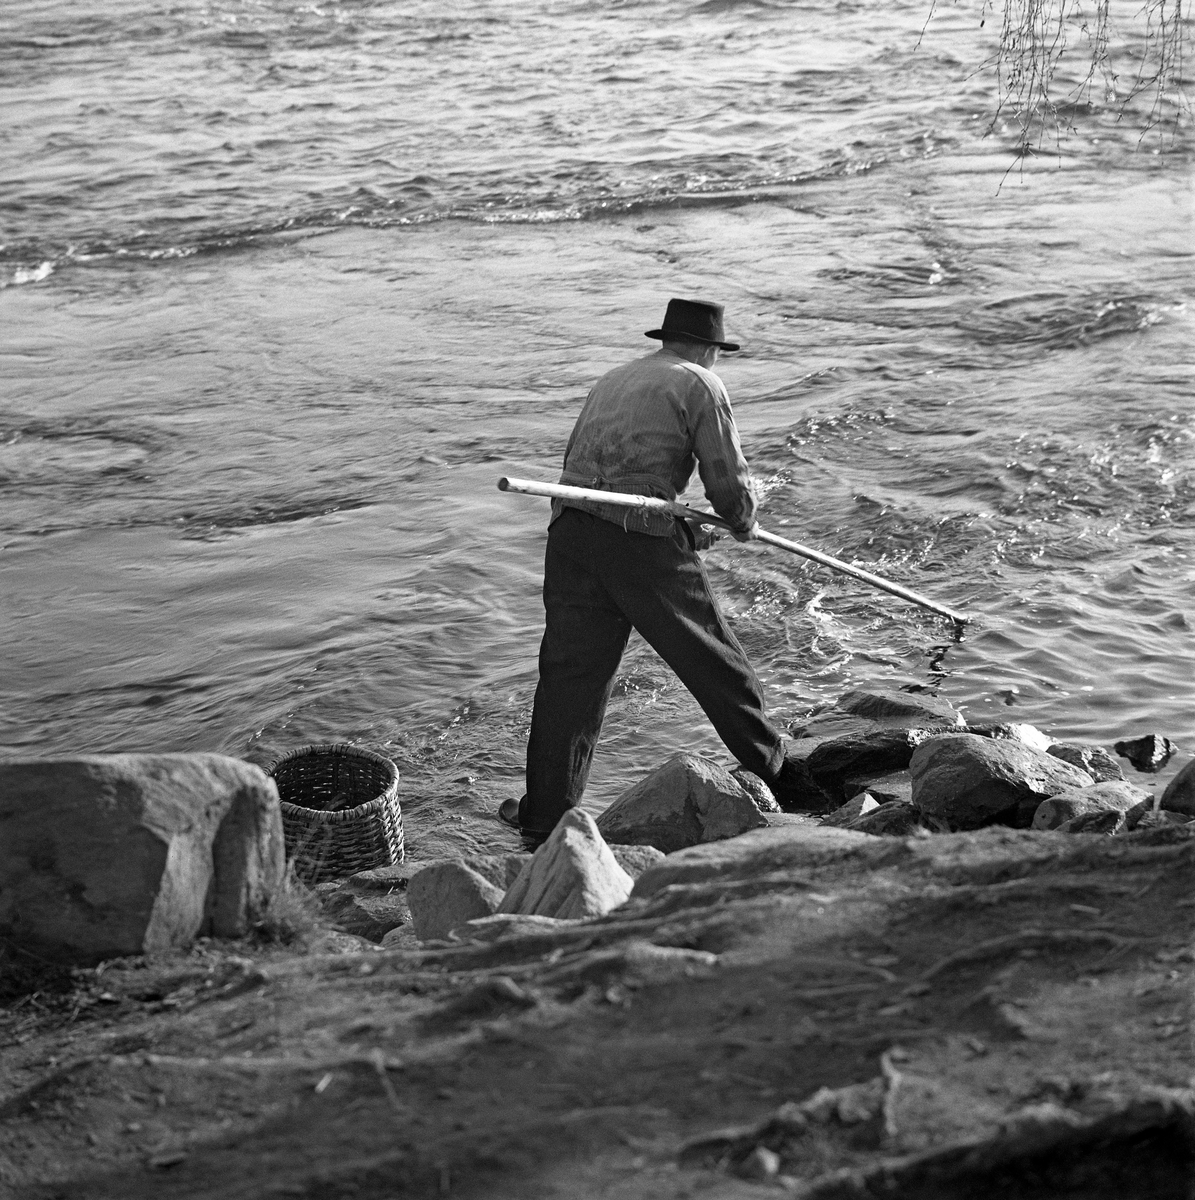 Hans Jørstad fra Fåberg, fotografert under lågåsildfisket i 1962.  Han fisket med grunnhåv, og bak ham ser vi en «snik», et flettet bæreredskap som håvfiskerne i den nedre delen av Gudbrandsdalslågen brukte.  Hans Jørstad var kledd i vadmelsbukser og busserull, og han hadde en svart filthatt på hodet.  Han sto i strandsonen i en del av Lågen der det etter vannspeilet å dømme var strid strøm.  Bildet skal være tatt ved Rundtom, som ligger på vestsida av Lågen, like nord for sideelva Gausas innløp.

Grunnhåven er et enmannsredskap, beregnet på fangst av lågåsild fra elvebredden.  Den besto av et treskaft - ei «raun» - som kunne være fire til seks meter lang, og et «håvhuggu» med en finmasket fangtspose av bomullsgarn.  Håvhugguet var ovalt.  Håven ble ført ned i vannet på motstrøms side og ført med vannmassene langs botnen, litt hurtigere enn strømhastigheten, slik at fangstposen sto utspent på oversida av håvhugguet.  Når håven var kommet så langt nedover at fiskeren ikke nådde lengre, vred han rauna, så åpningen til «påsa'n» vendte oppover, slik at eventuell fangst ikke fikk sjansen til å unnslippe.  Var det lågåsild i håven, holdt fiskeren håvhugguet over en snik eller ei bøtte samtidig som han løftet ytterenden av fangsposen opp i lufta, slik at fisken falt ned i transportbeholderen.